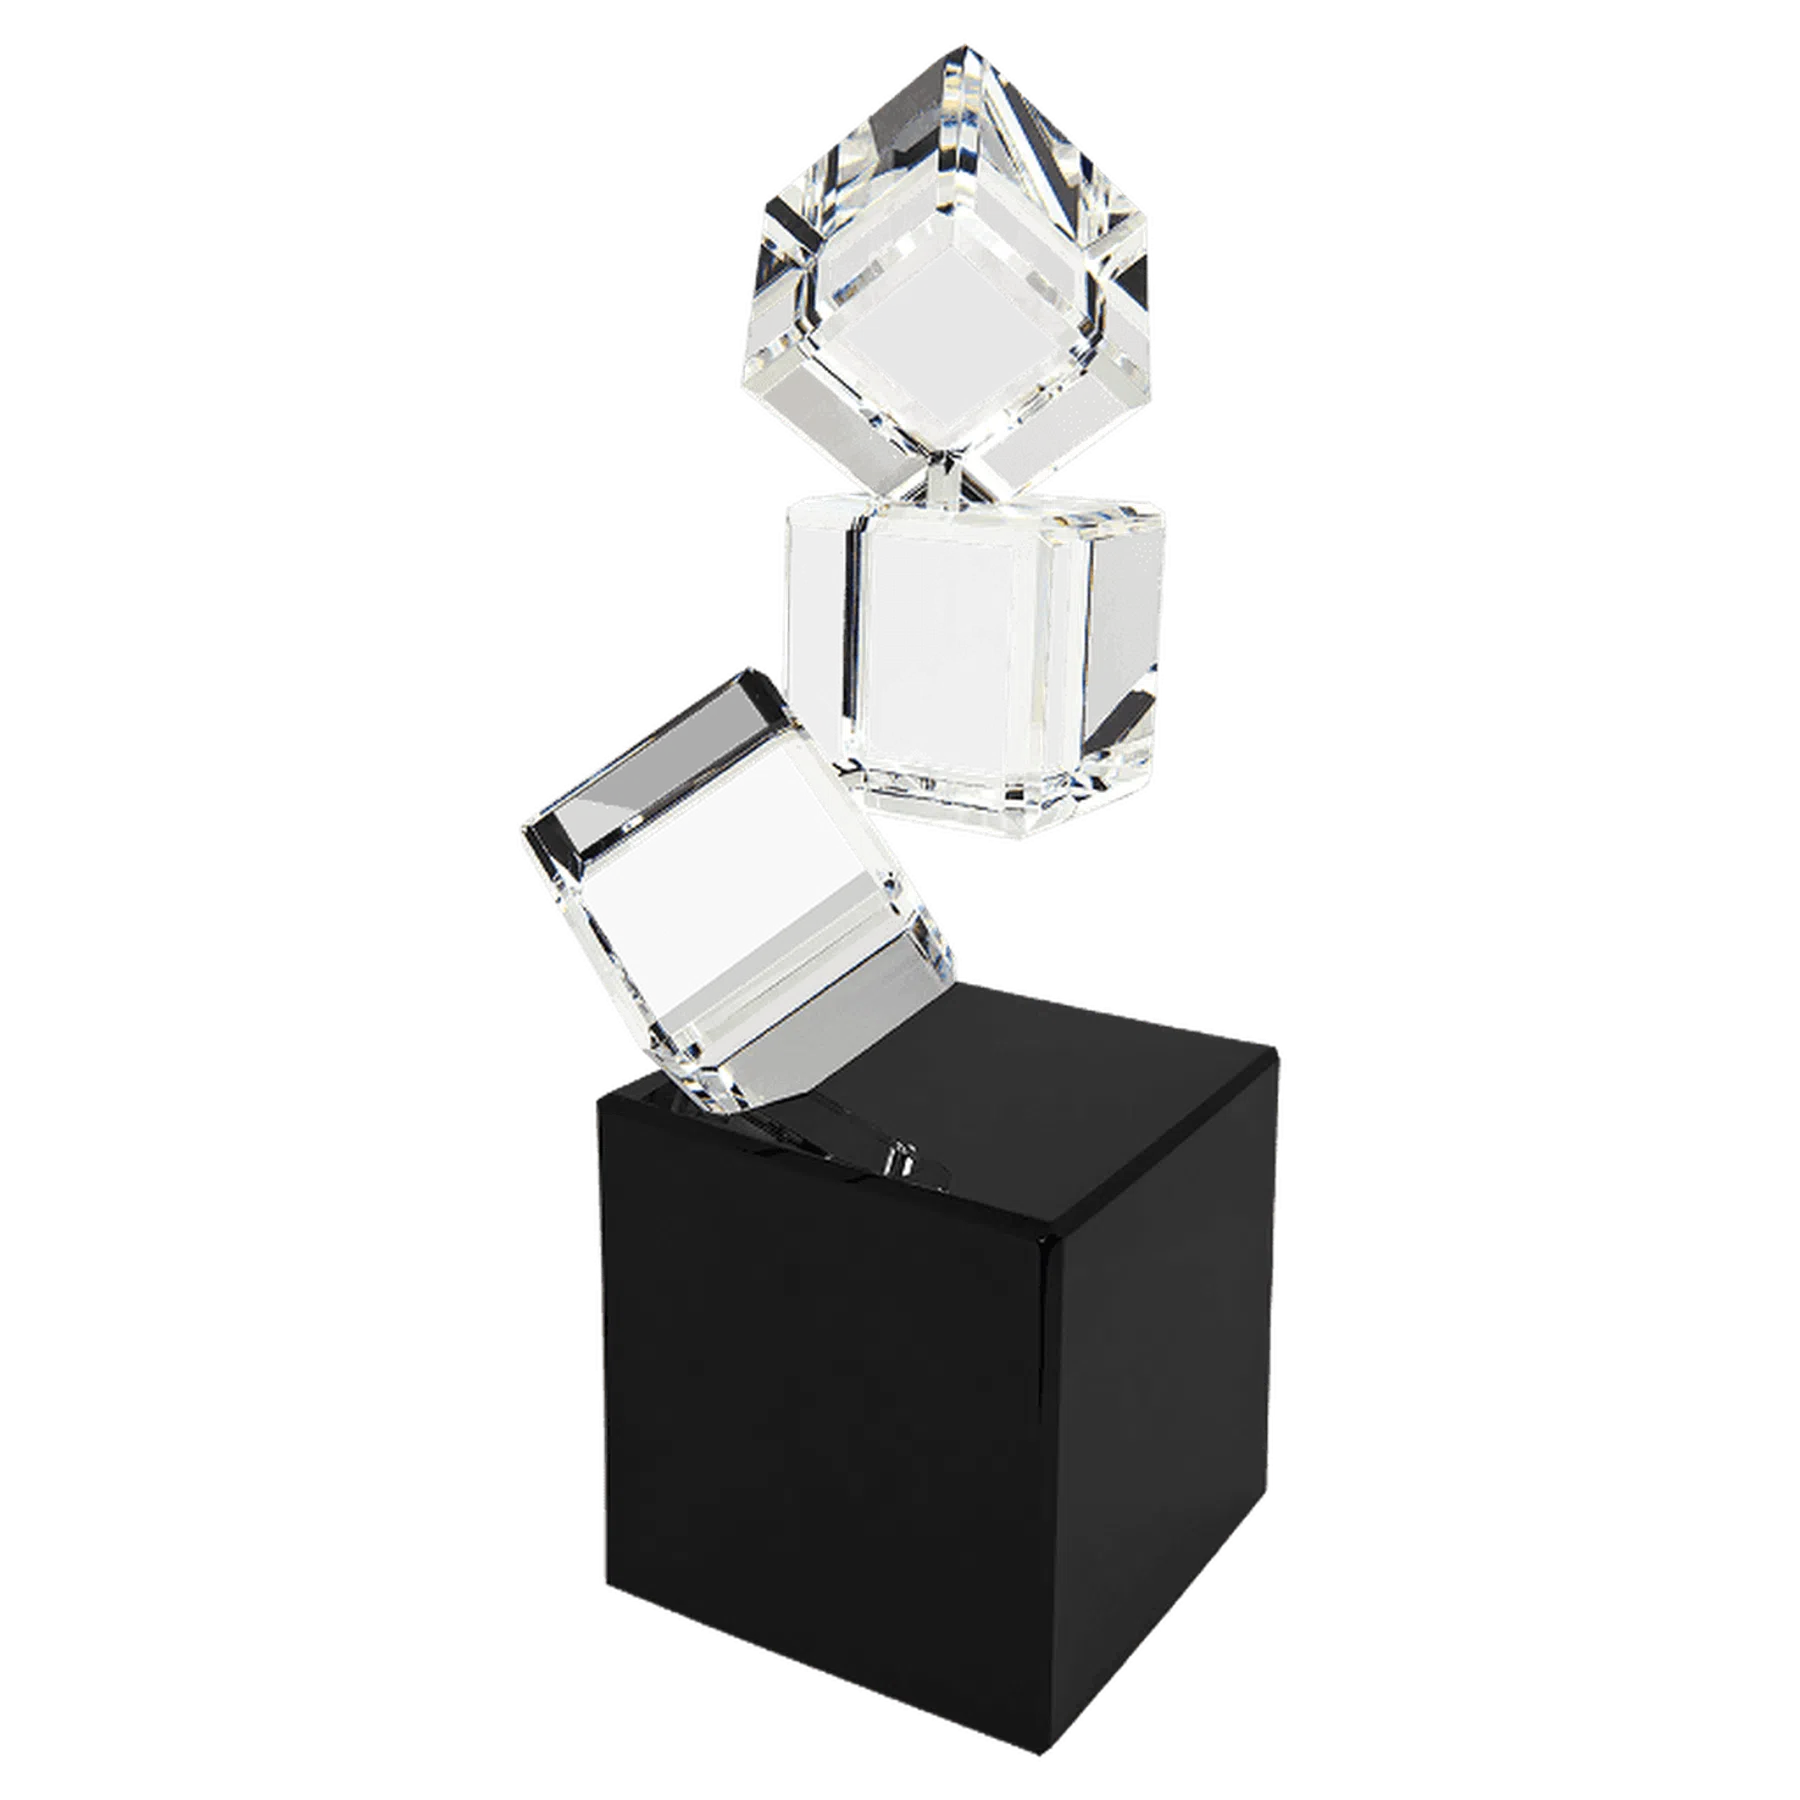 8" Triple Crystal Blocks on a Black Base